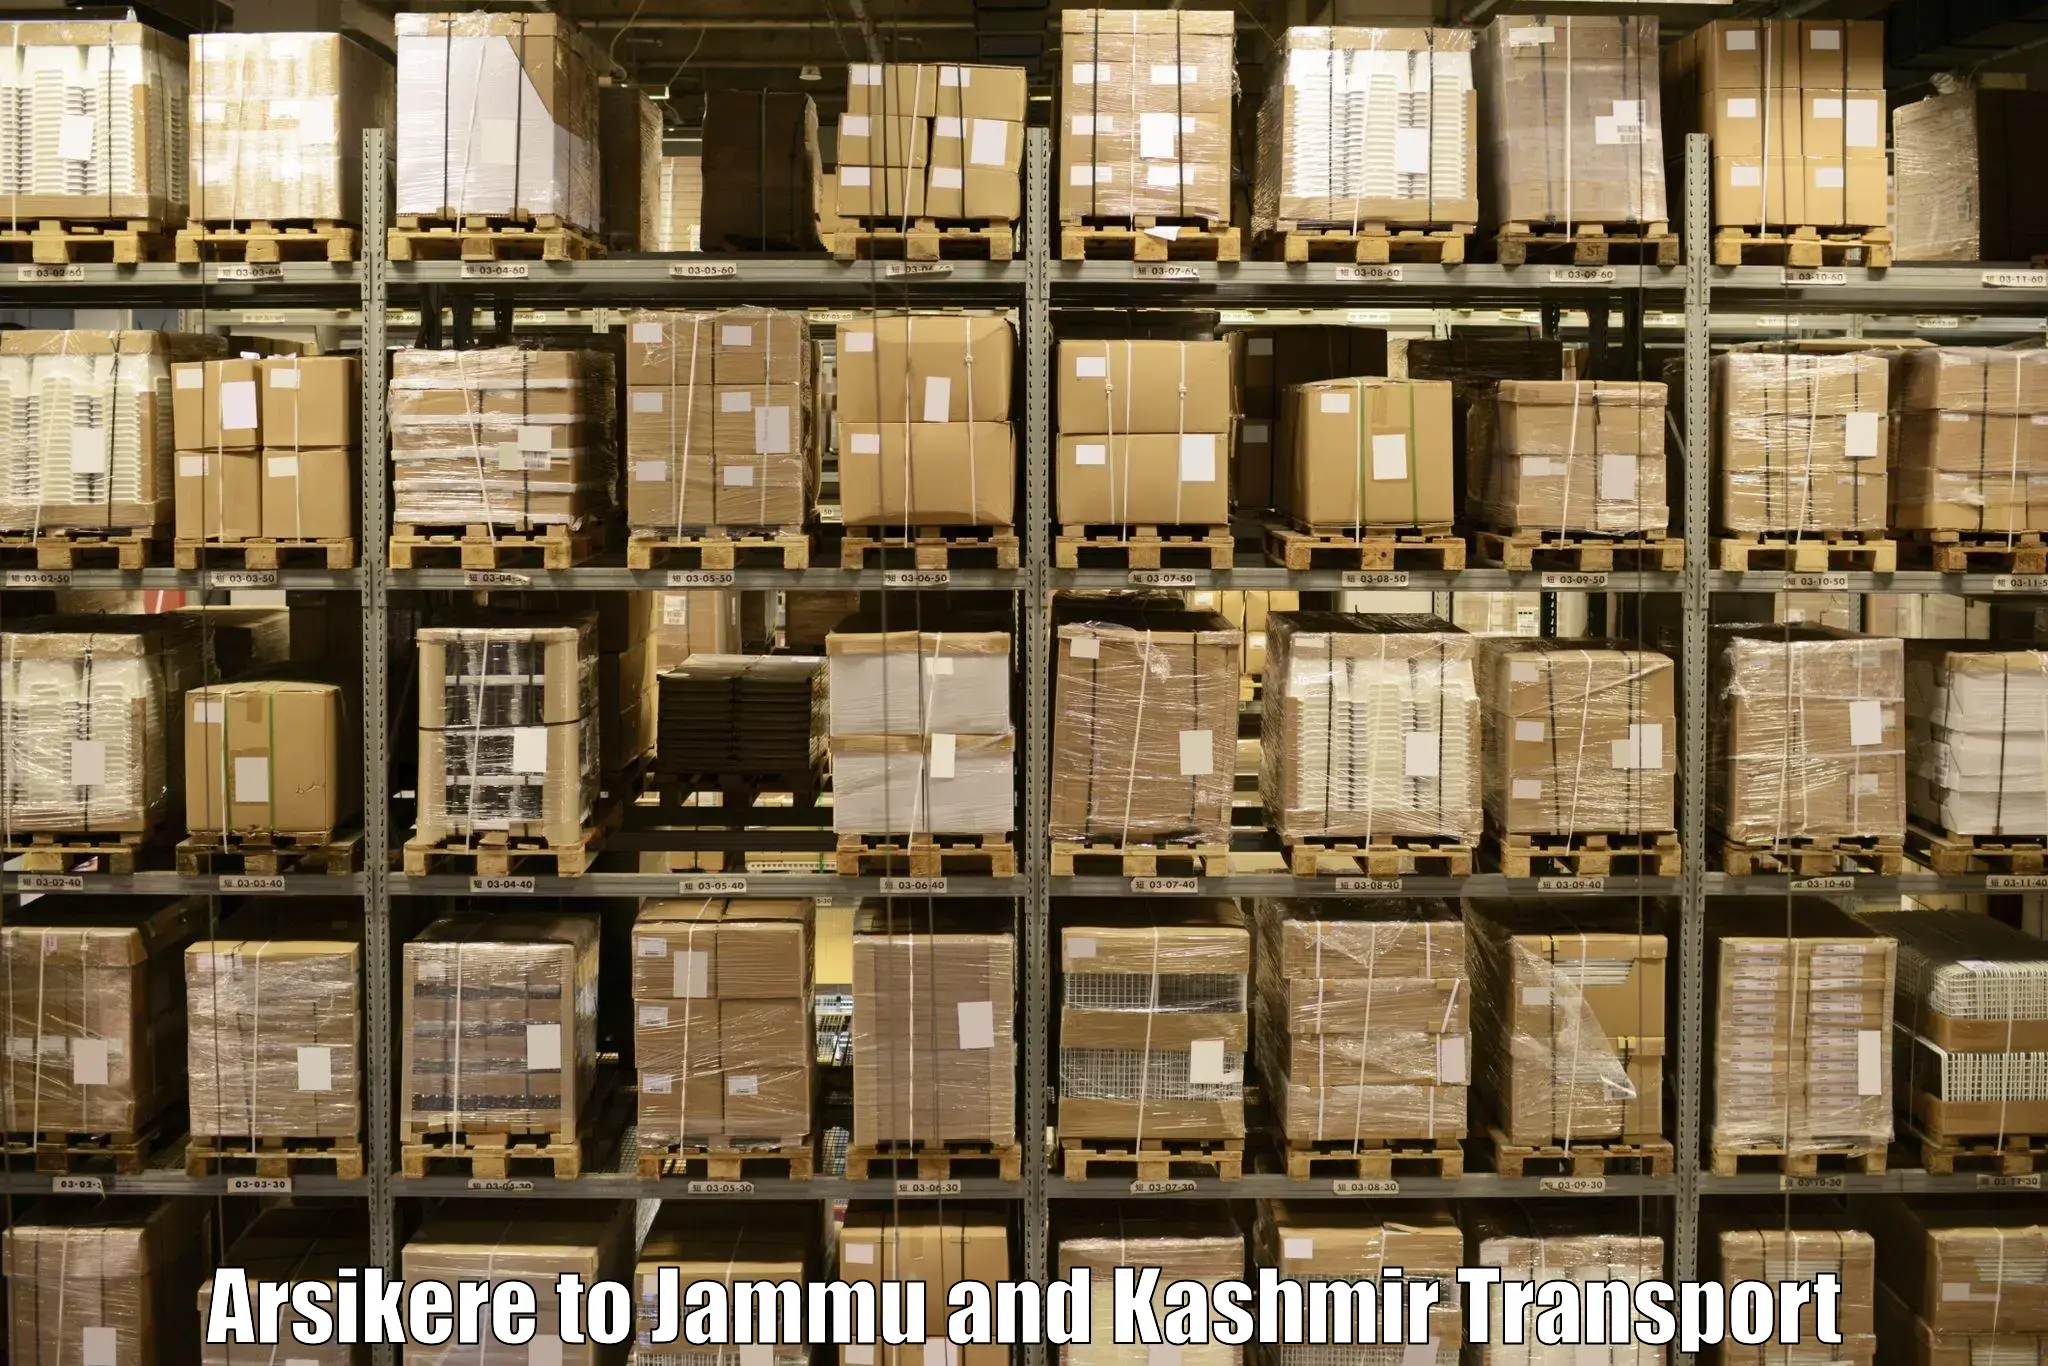 Cargo train transport services Arsikere to Billawar